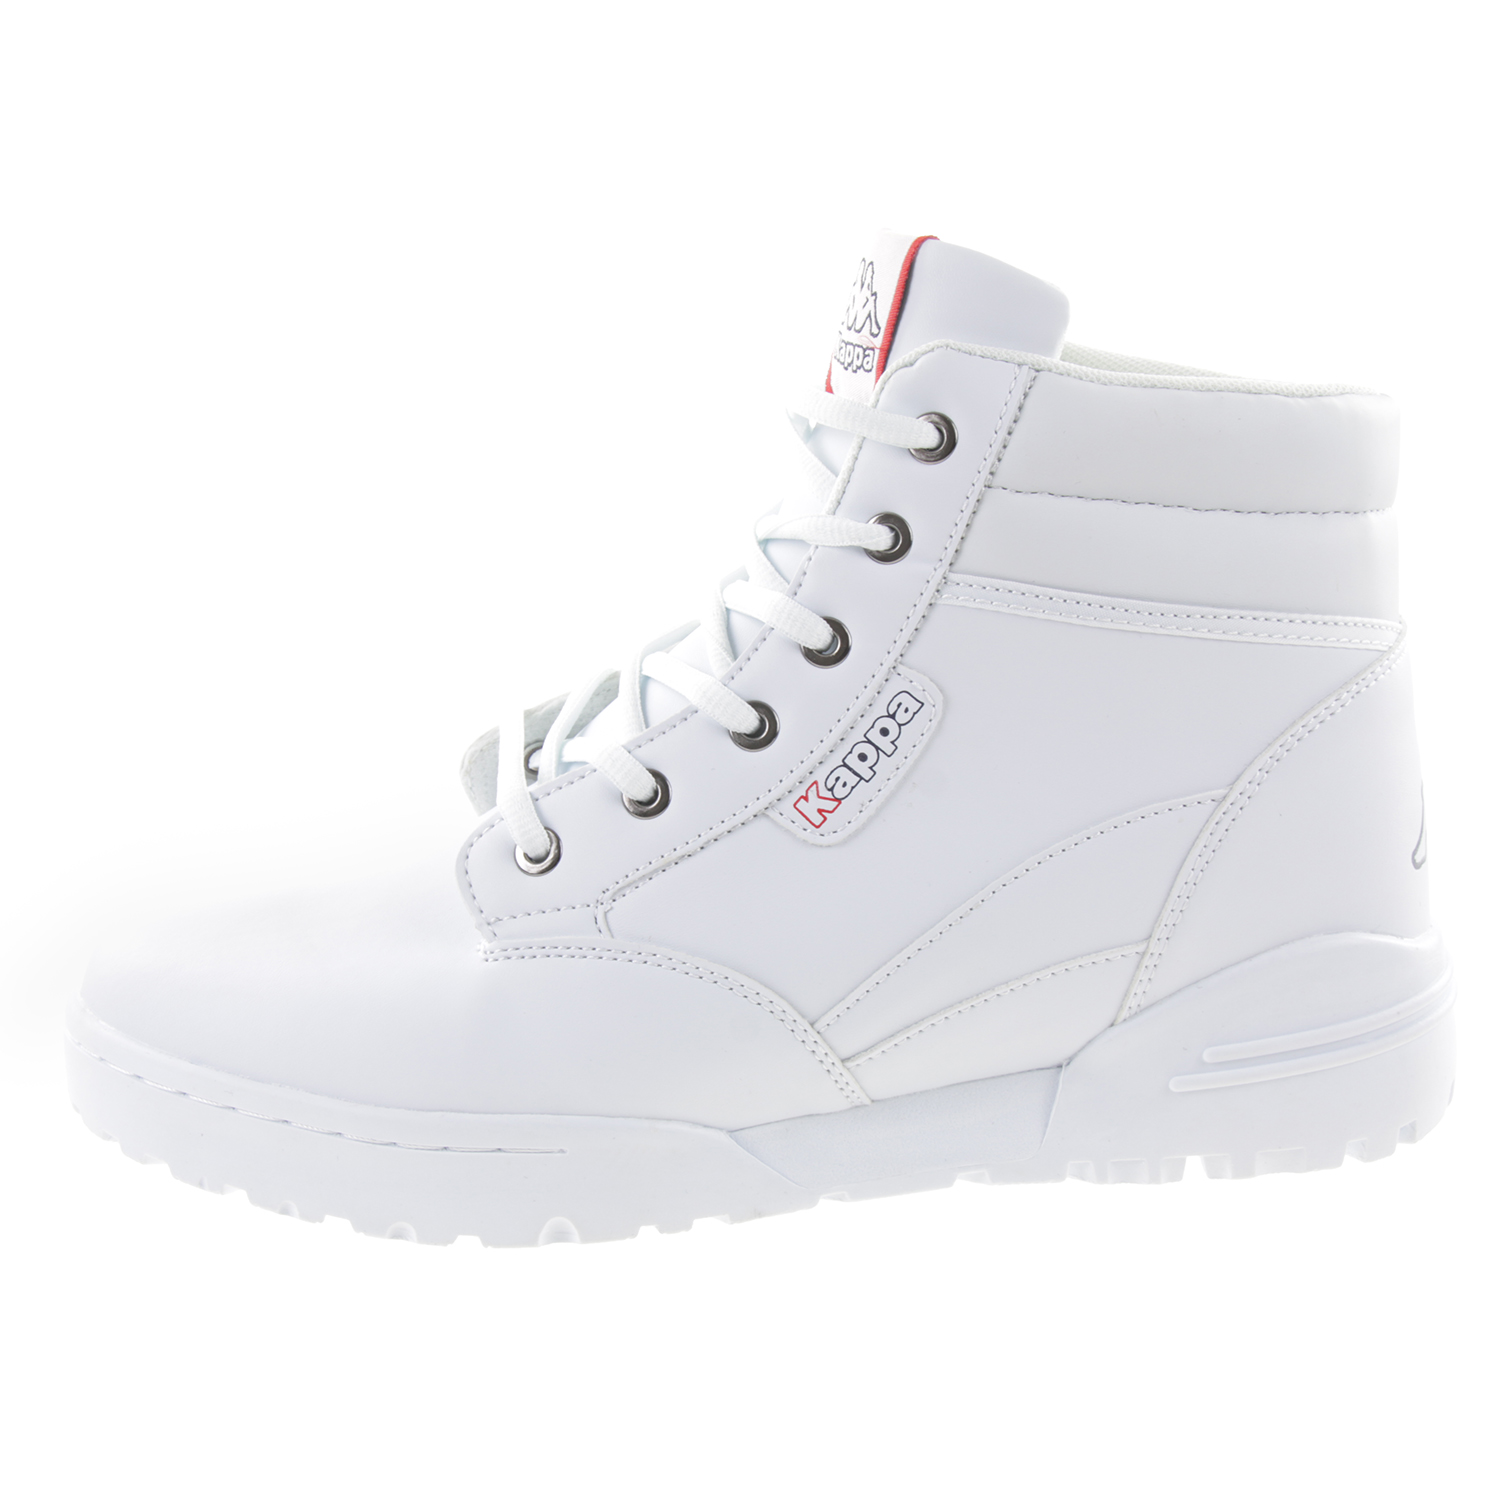 Kappa Unisex High Top Hoher Sneaker Schuhe Stylecode 242779 1010 weiss